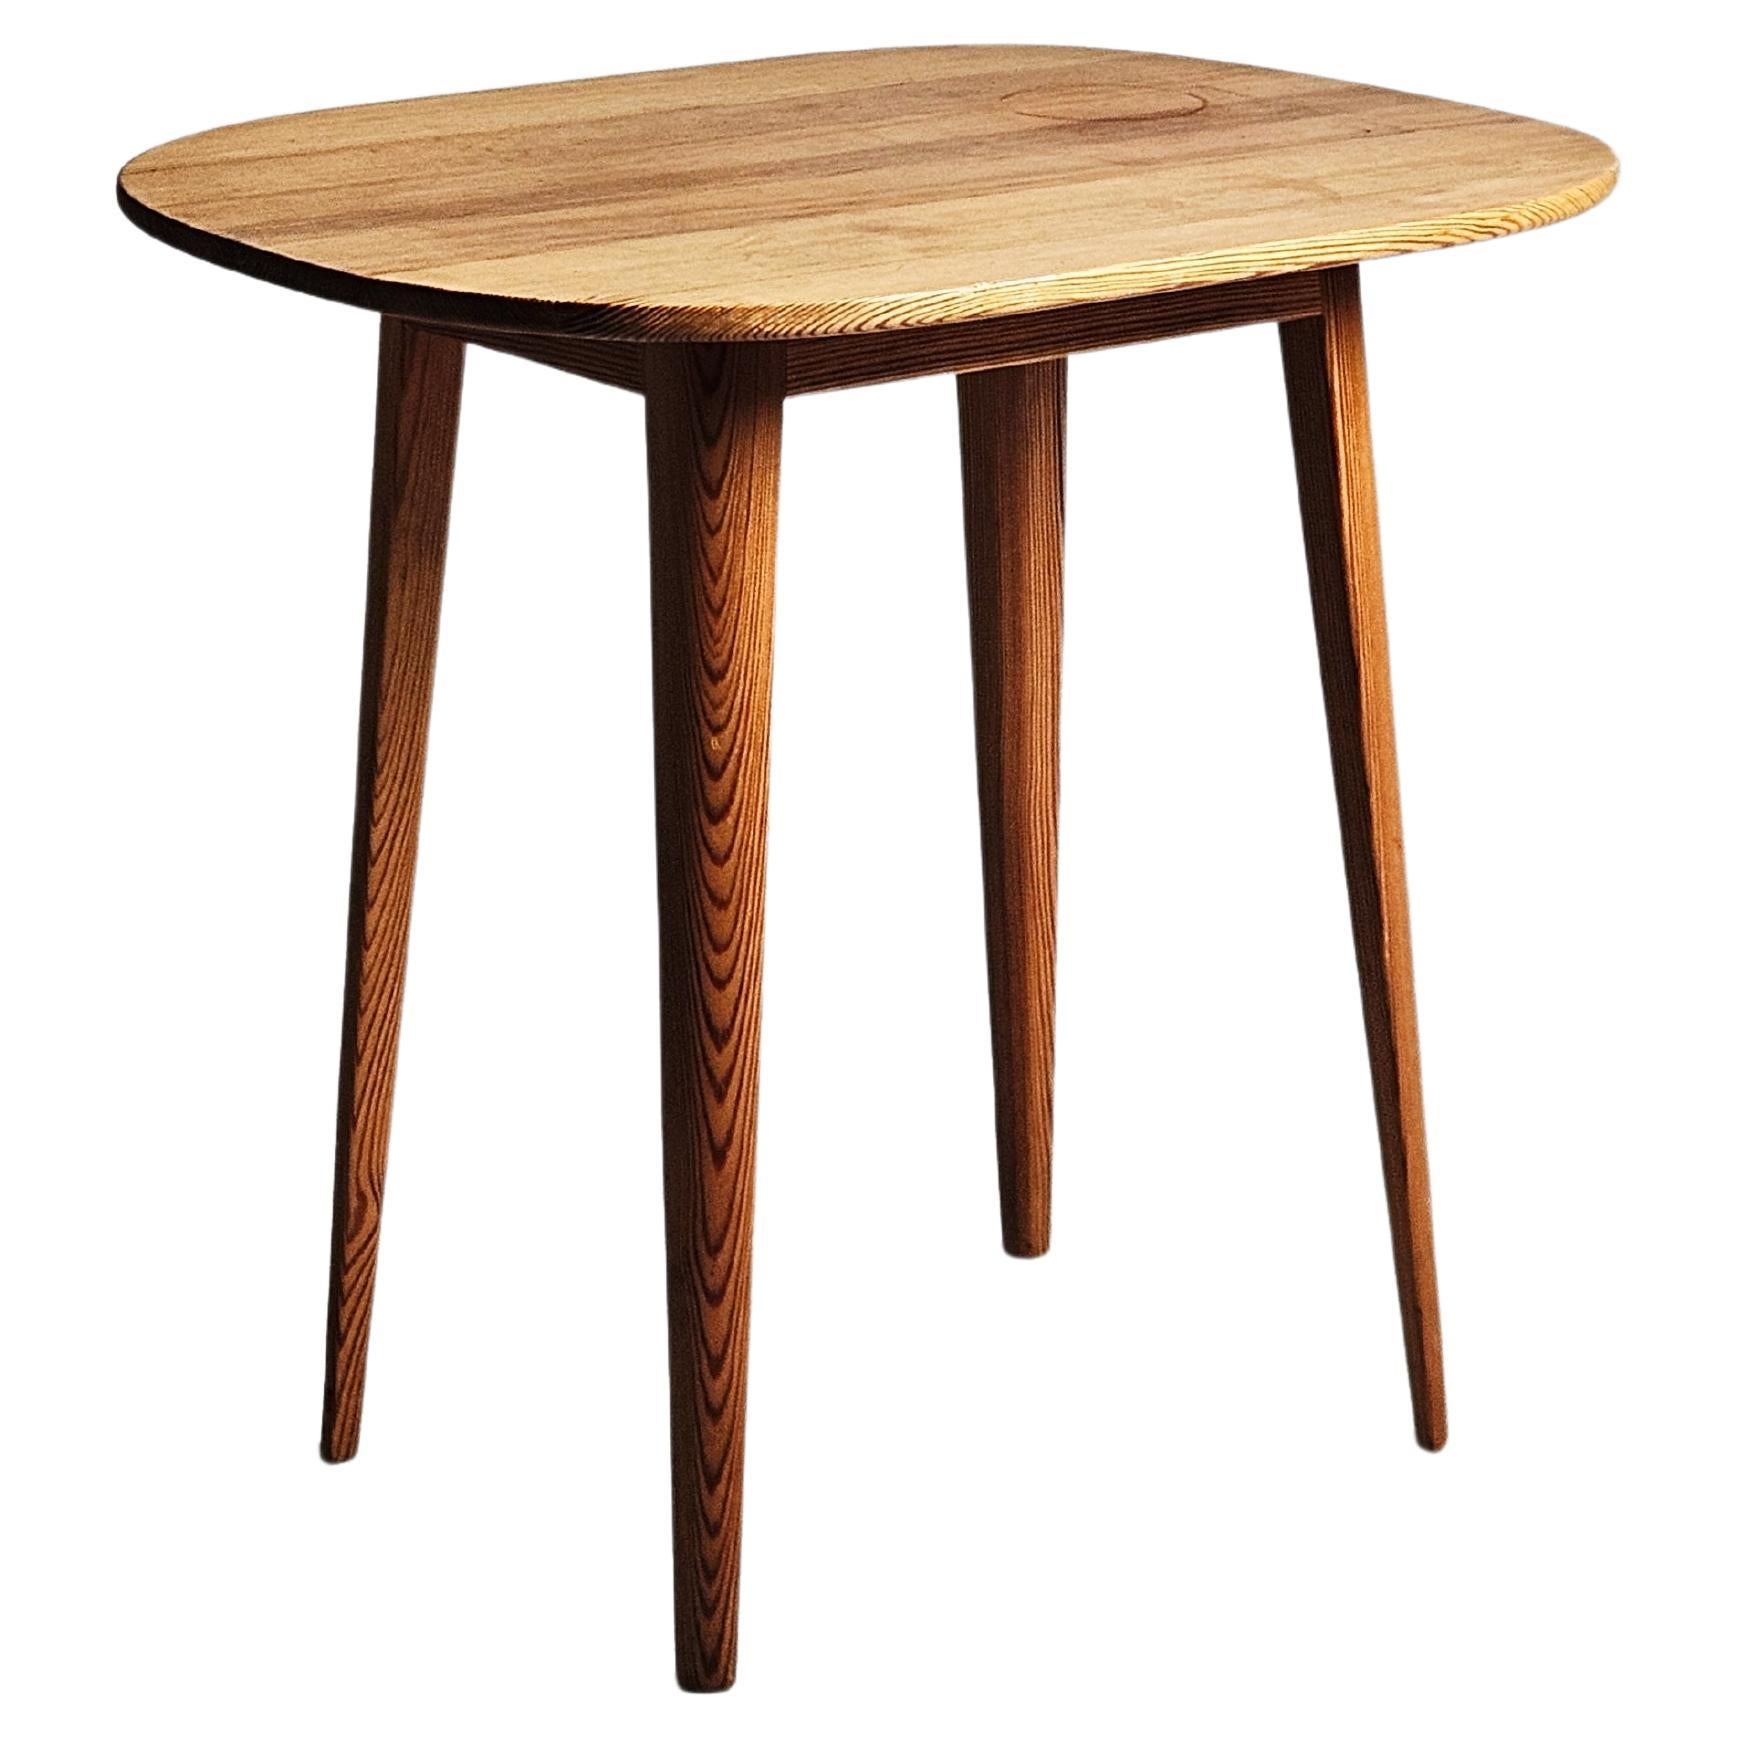 Scandinavian modern pine side table by Carl Malmsten, 1950s, Sweden